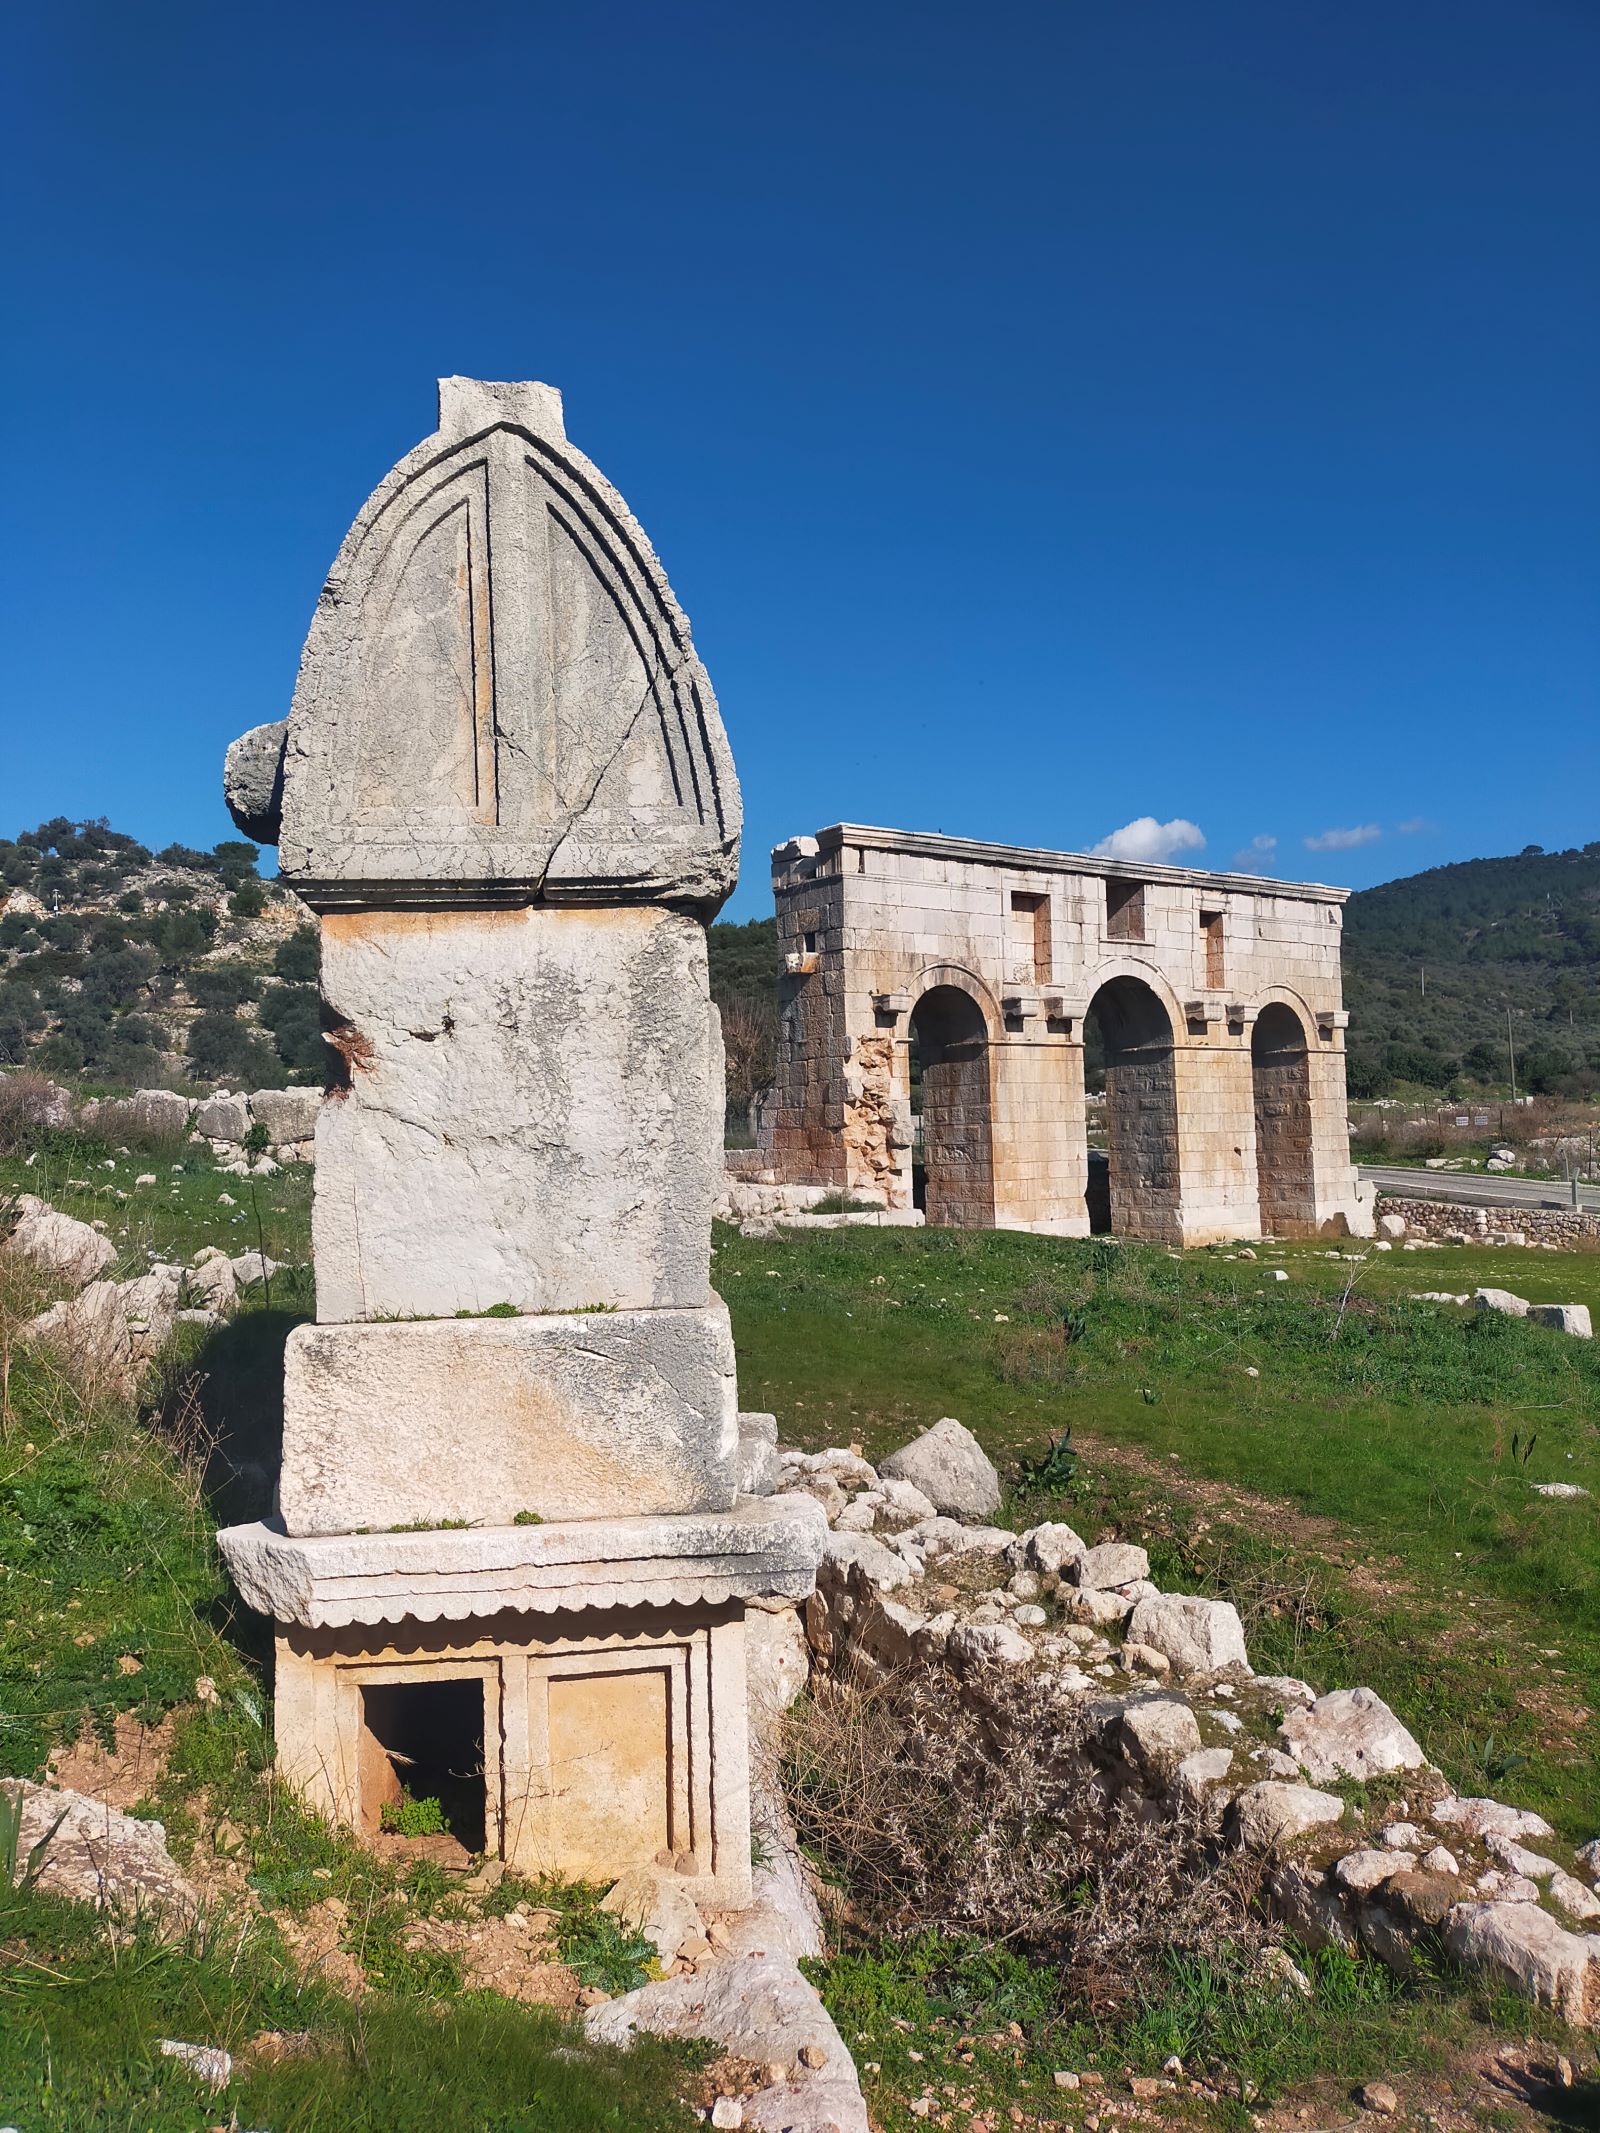 Sarcophogi and patara arch